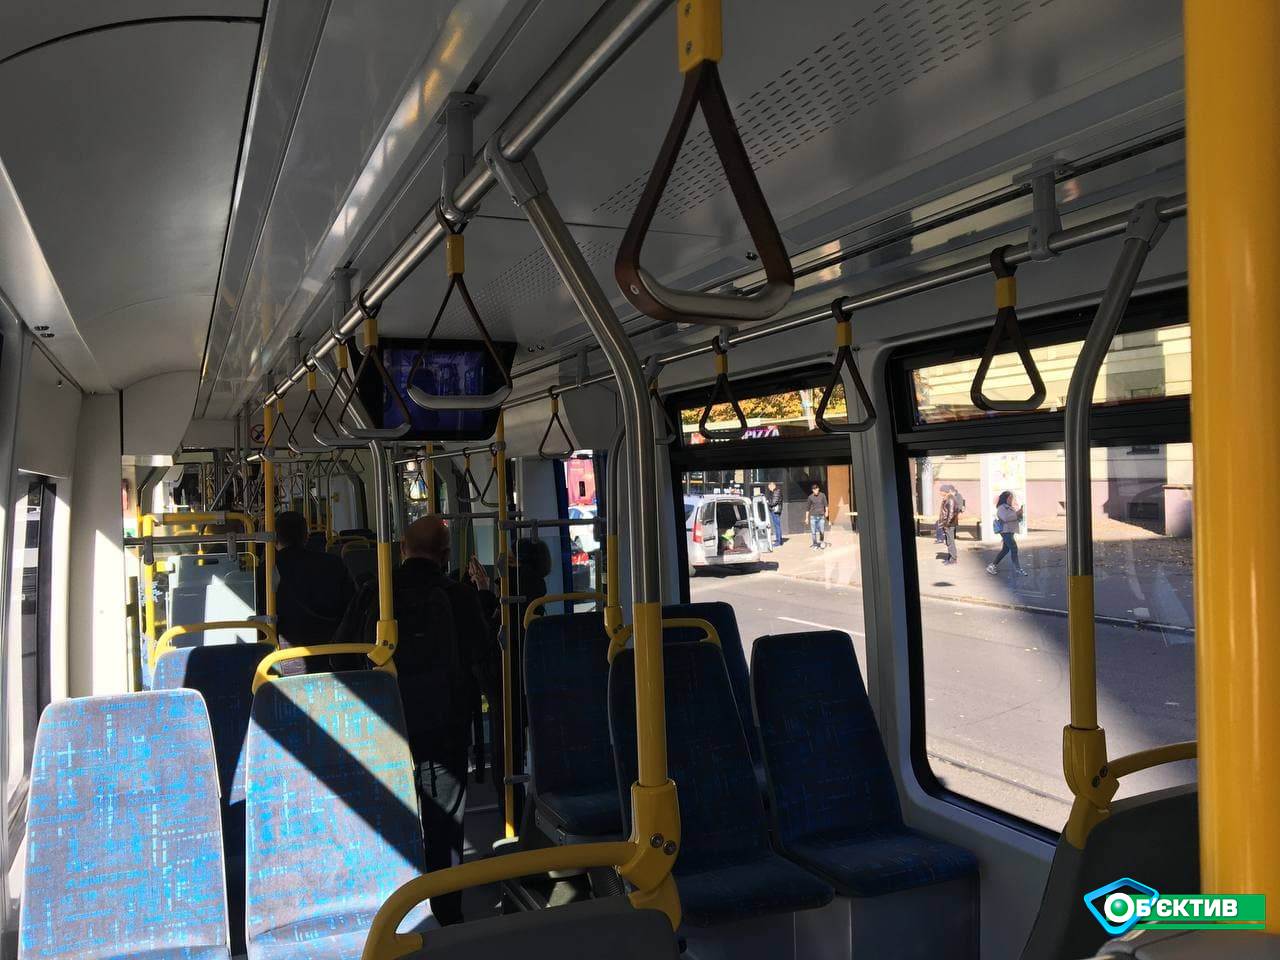 Трехсекционный трамвай от швейцарской компании "Stadler" совершил поездку по центру Харькова